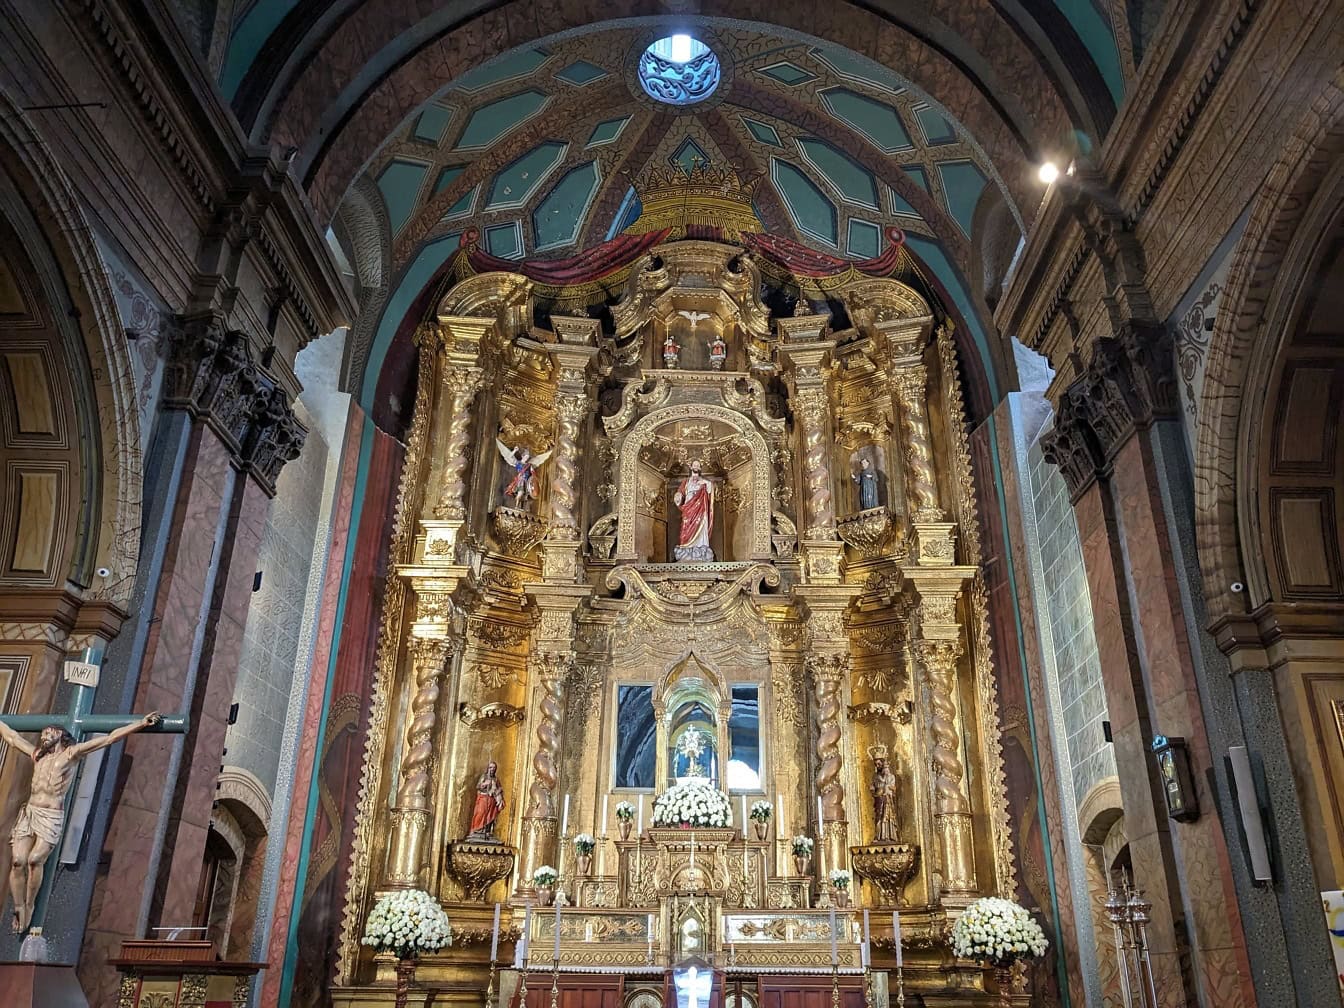 Arany díszes oltár szobrokkal a Tabernákulum reneszánsz katolikus templomában Quitóban, Ecuador fővárosában;